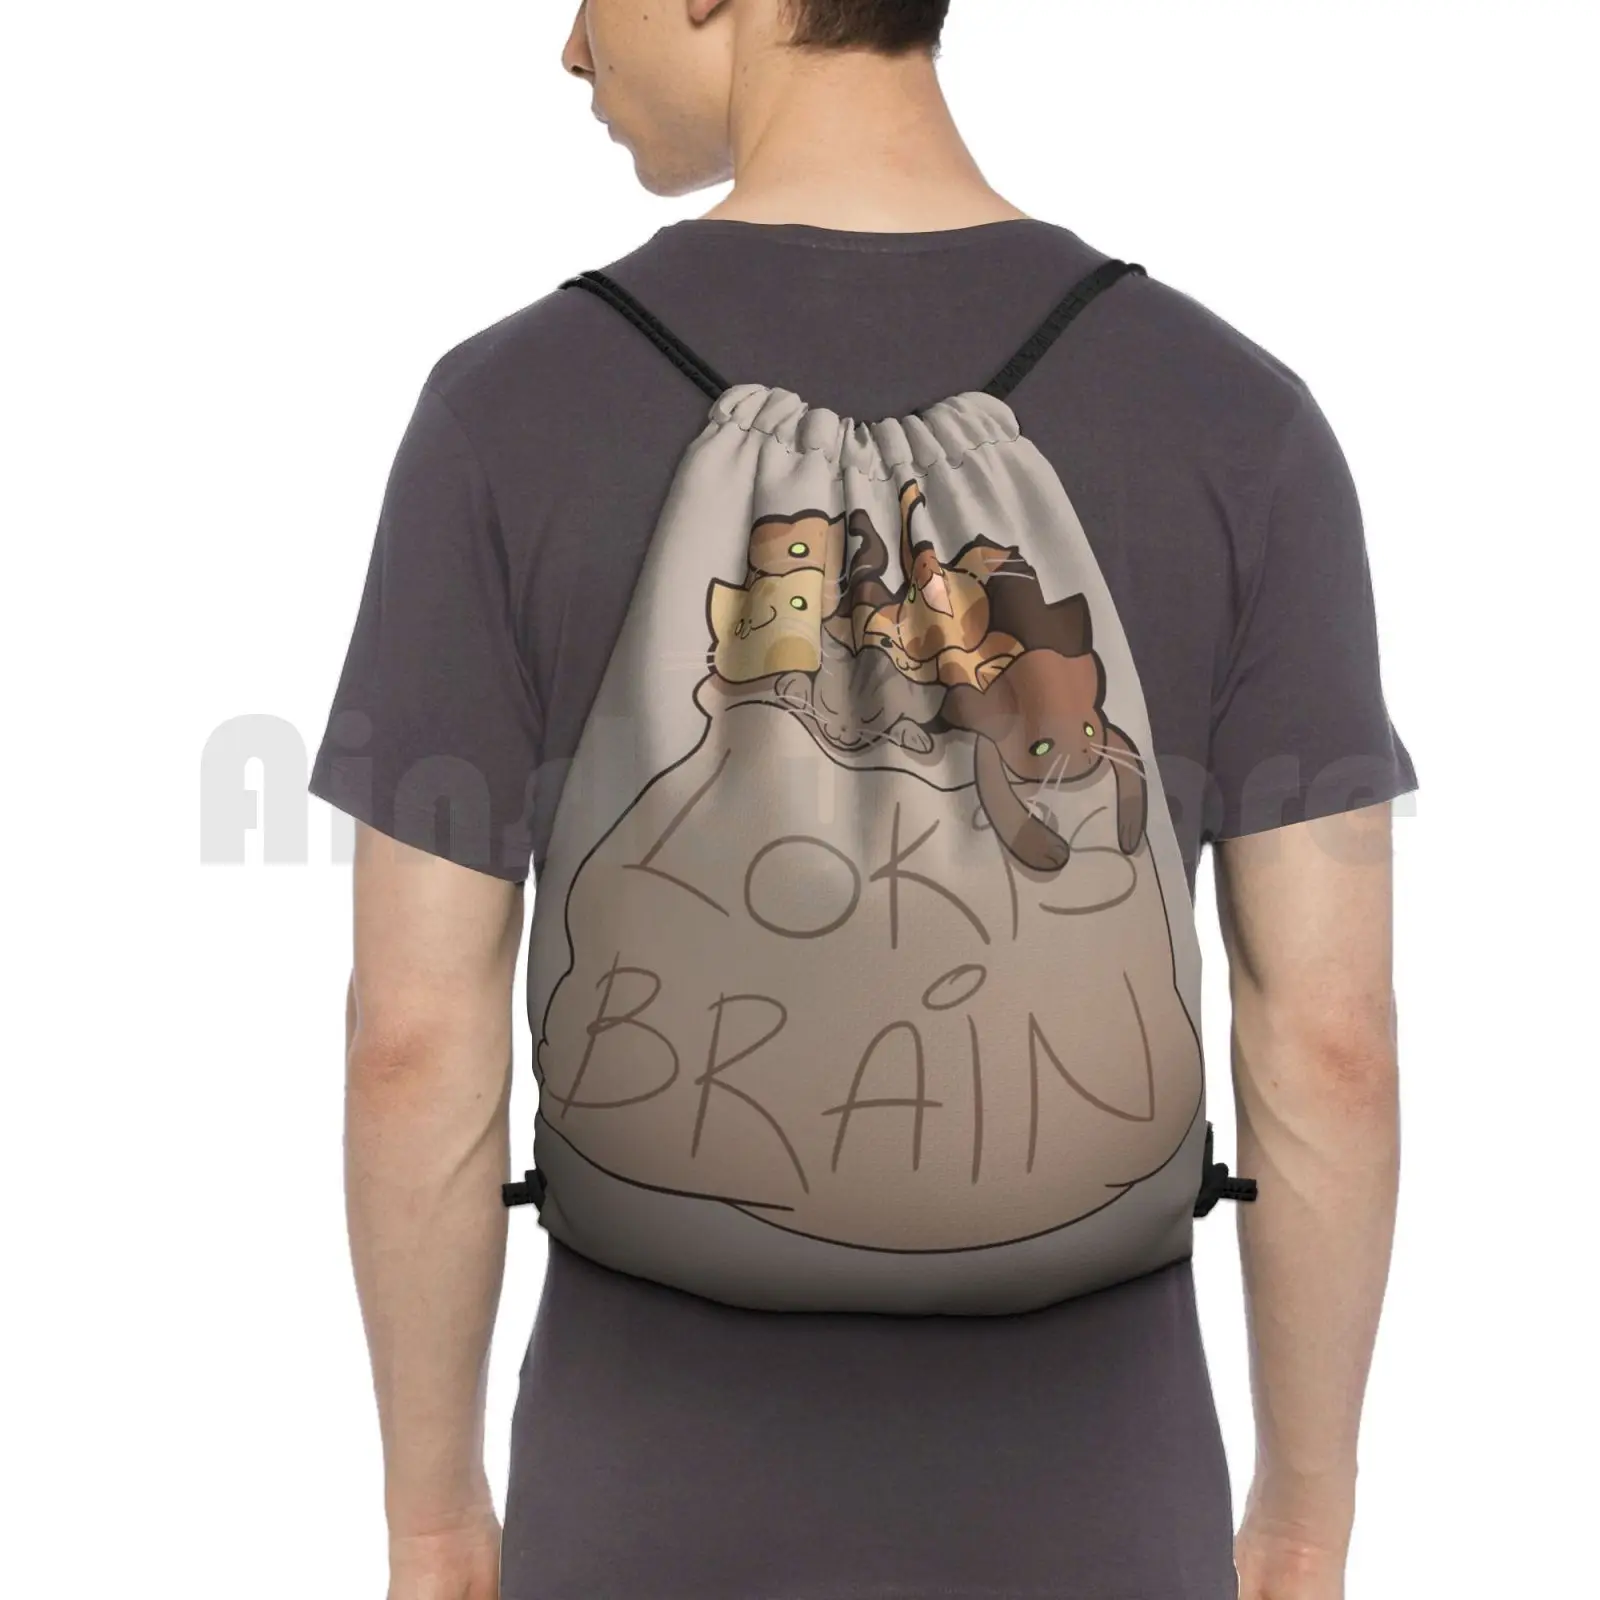 

Brain Backpack Drawstring Bags Gym Bag Waterproof The Comics Cats Cute Geek Geeky Nerd Nerdy Movie Movies Funny Parody